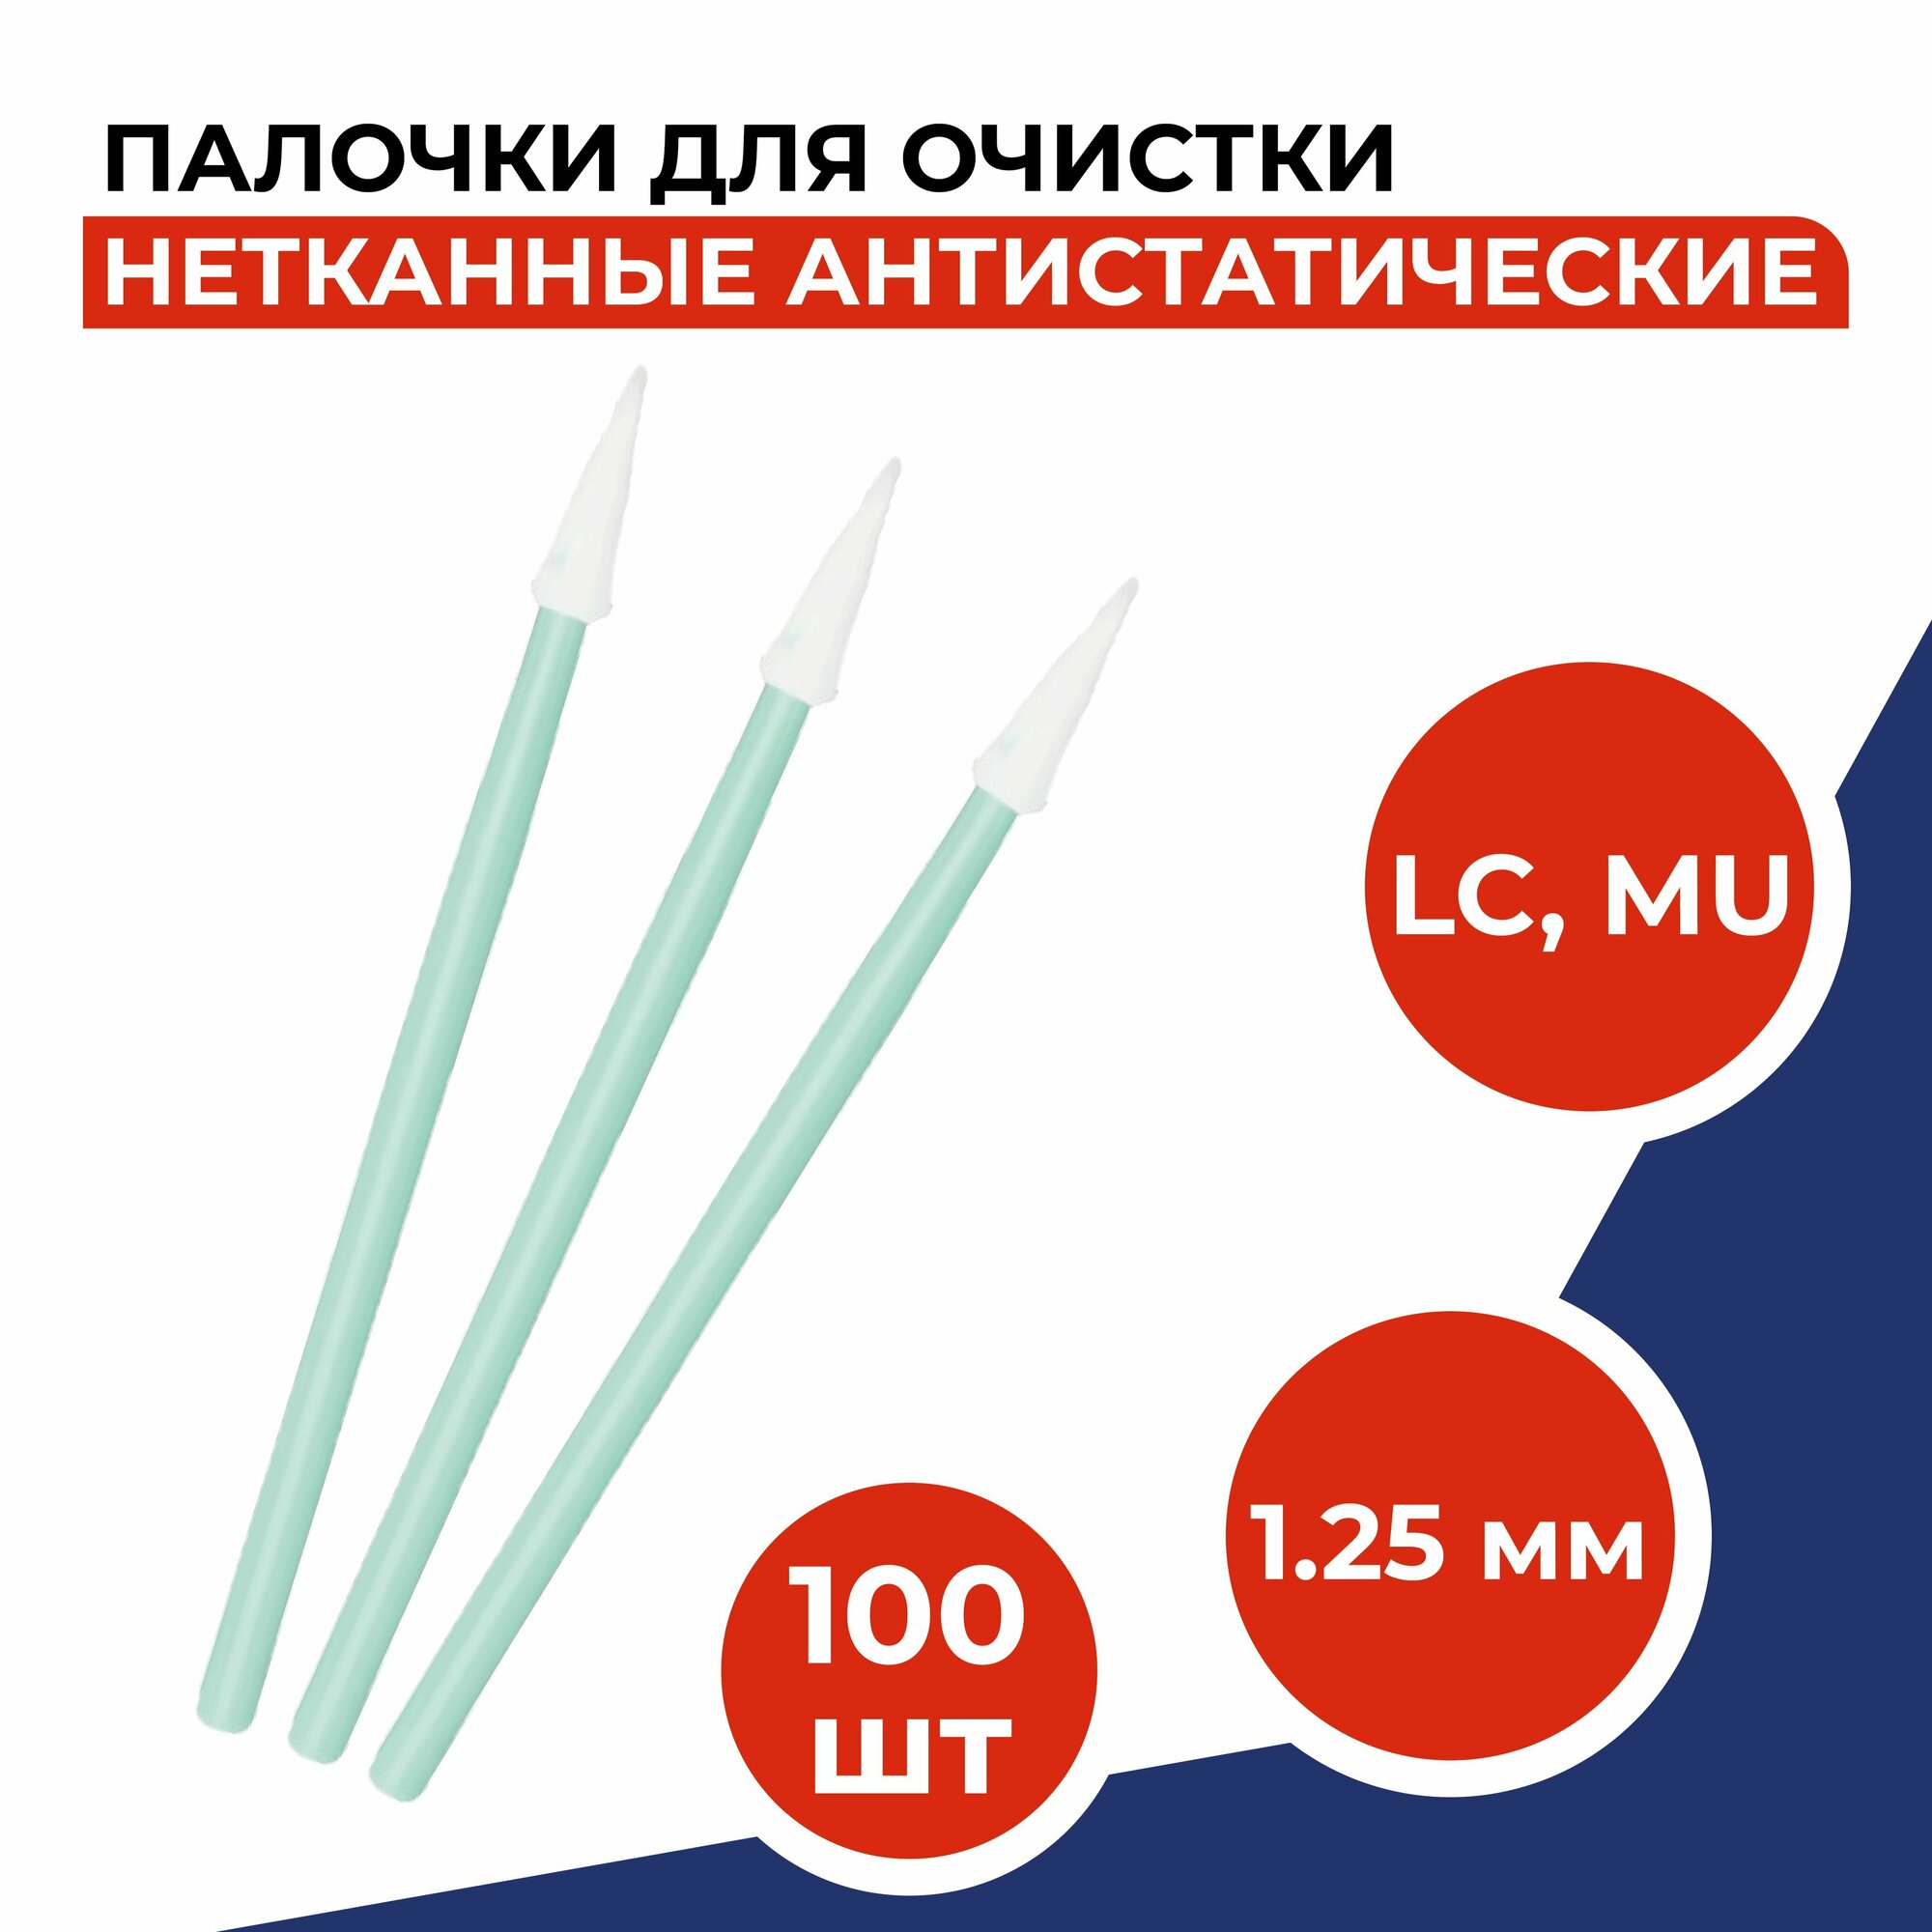 Палочки для очистки коннекторов (LC, MU) и адаптеров (1.25мм), 100шт/уп